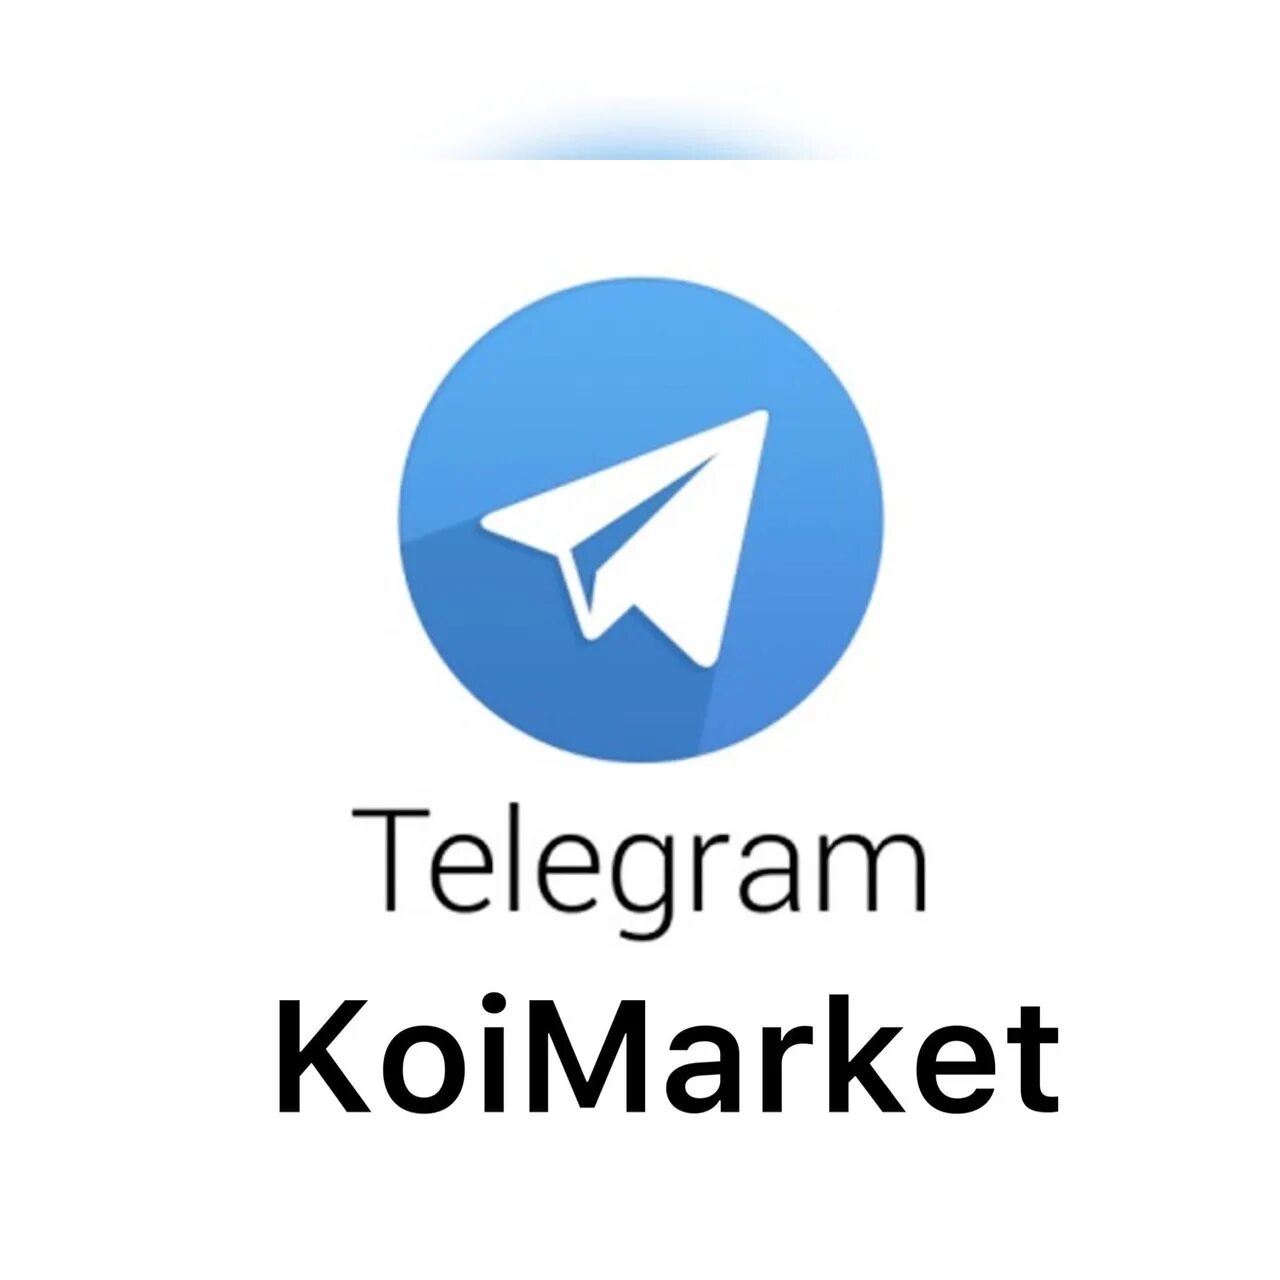 Задать вопрос в телеграм. Мы в телеграмме. Баннер телеграмм. Телеграм рекламный баннер. Мы теперь в телеграмме картинки.